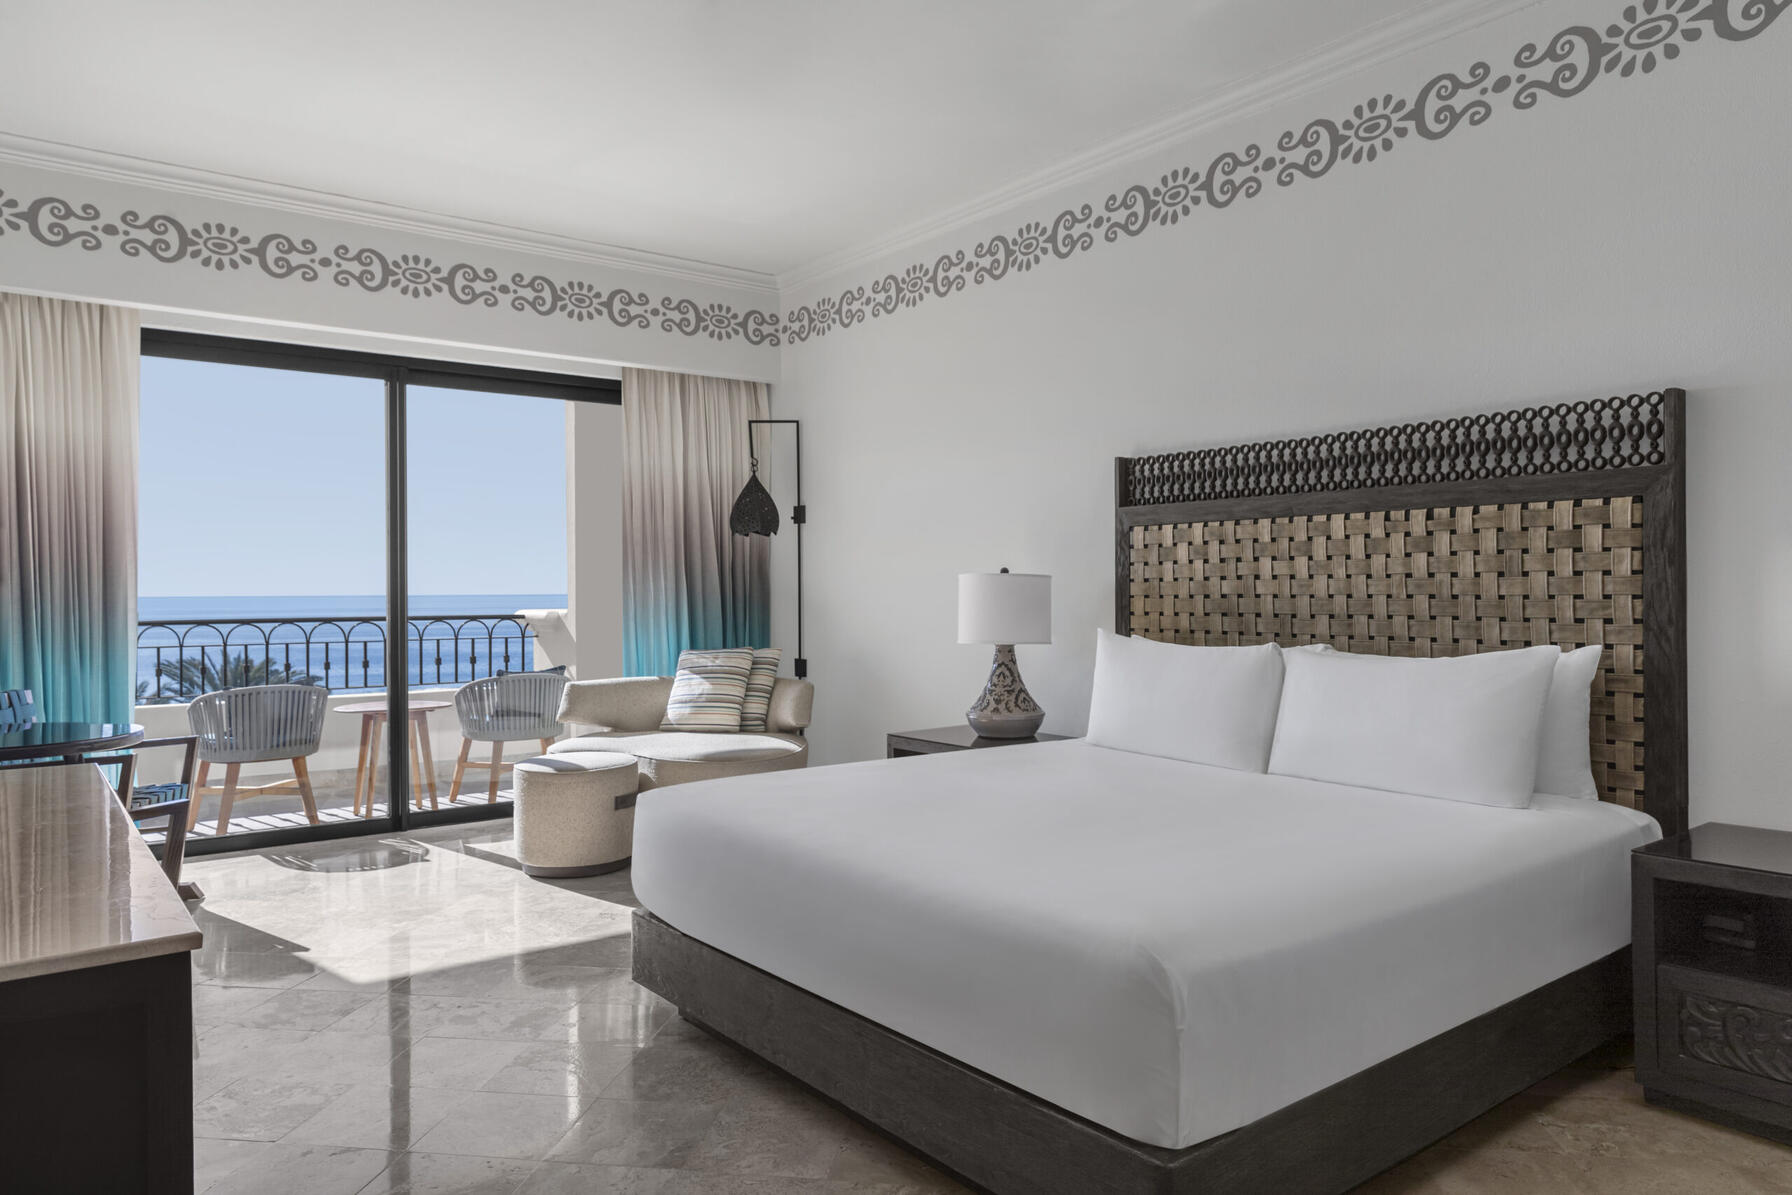 imagen de una habitación con cama doble, sala de estar y balcón con vista al mar